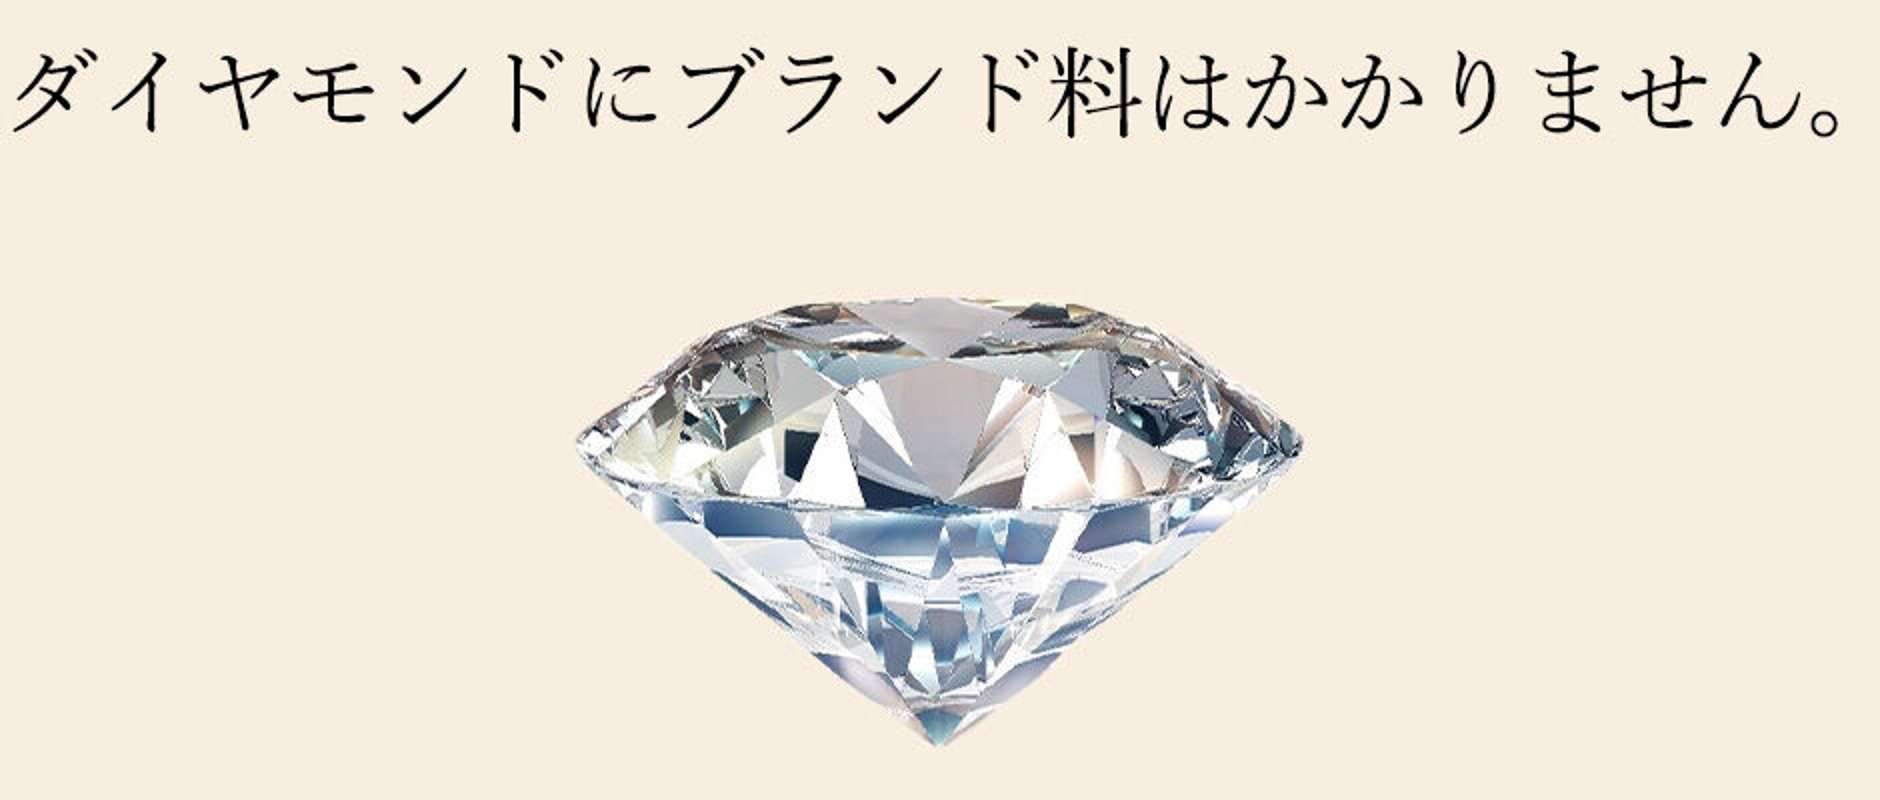 日本最大級の品揃えを誇る大阪 心斎橋・四ツ橋のダイヤモンド ...